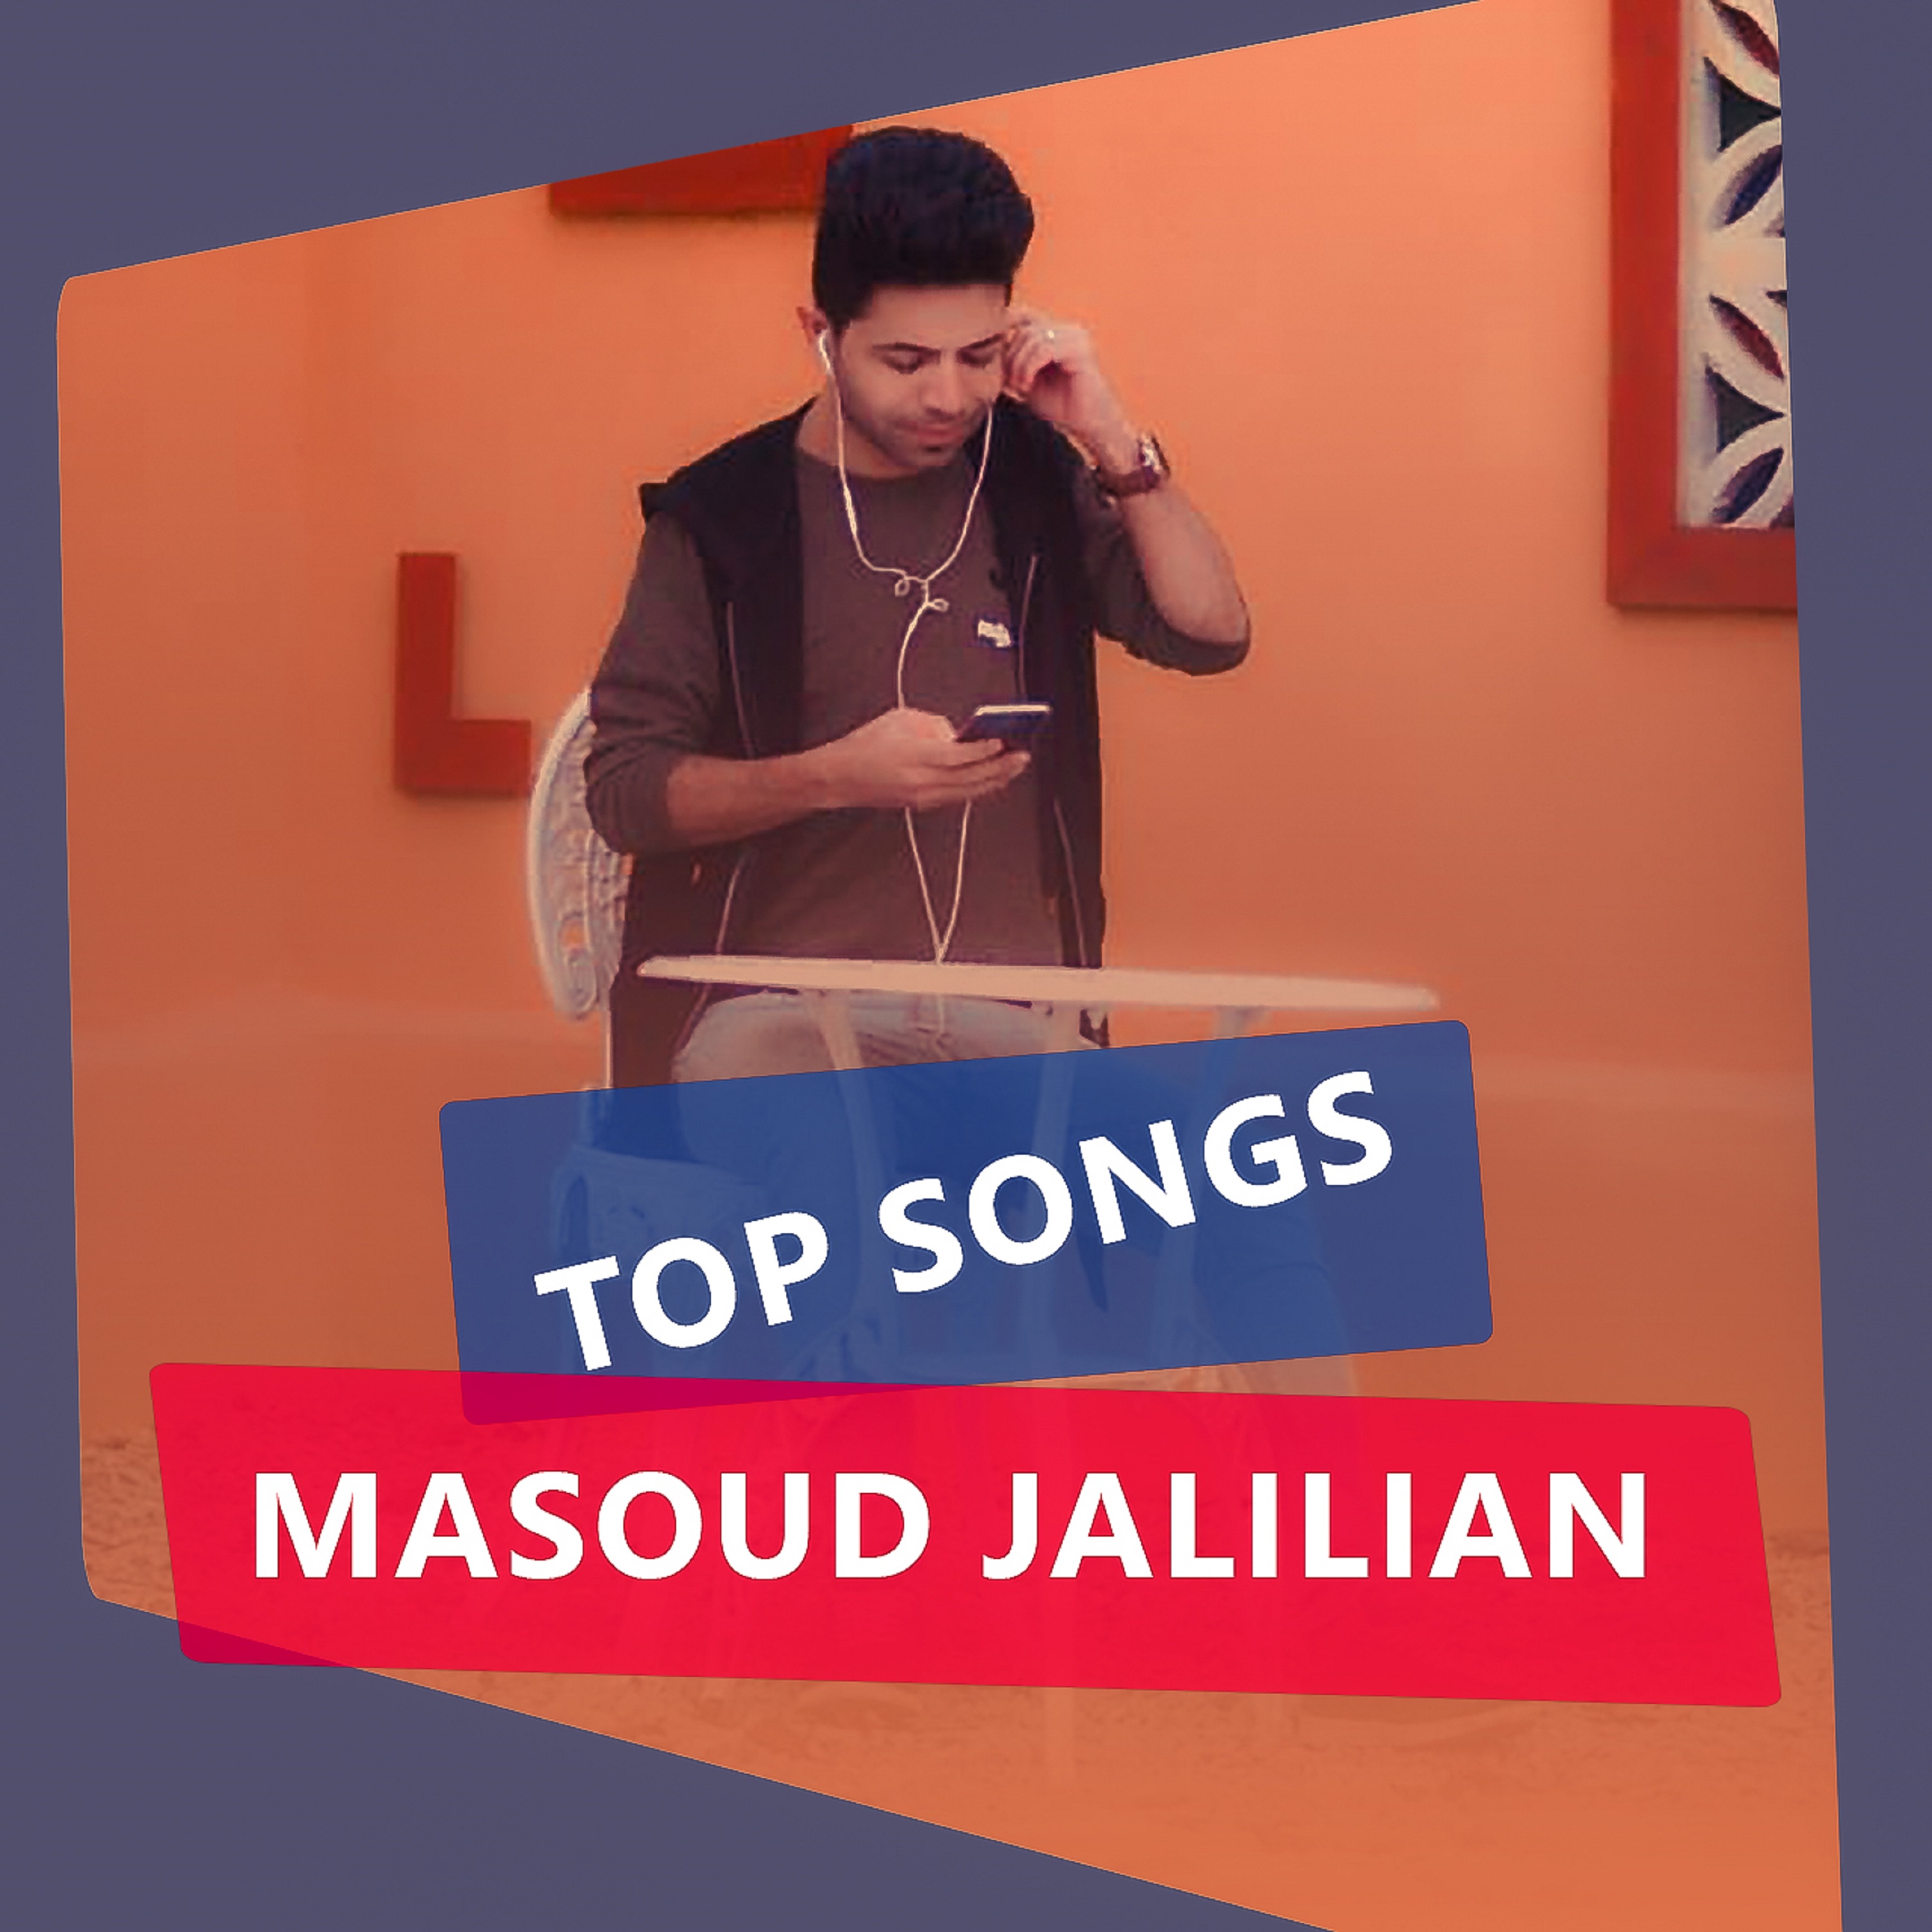  دانلود آهنگ جدید مسعود جلیلیان - باور | Download New Music By Masoud Jalilian - Bavar